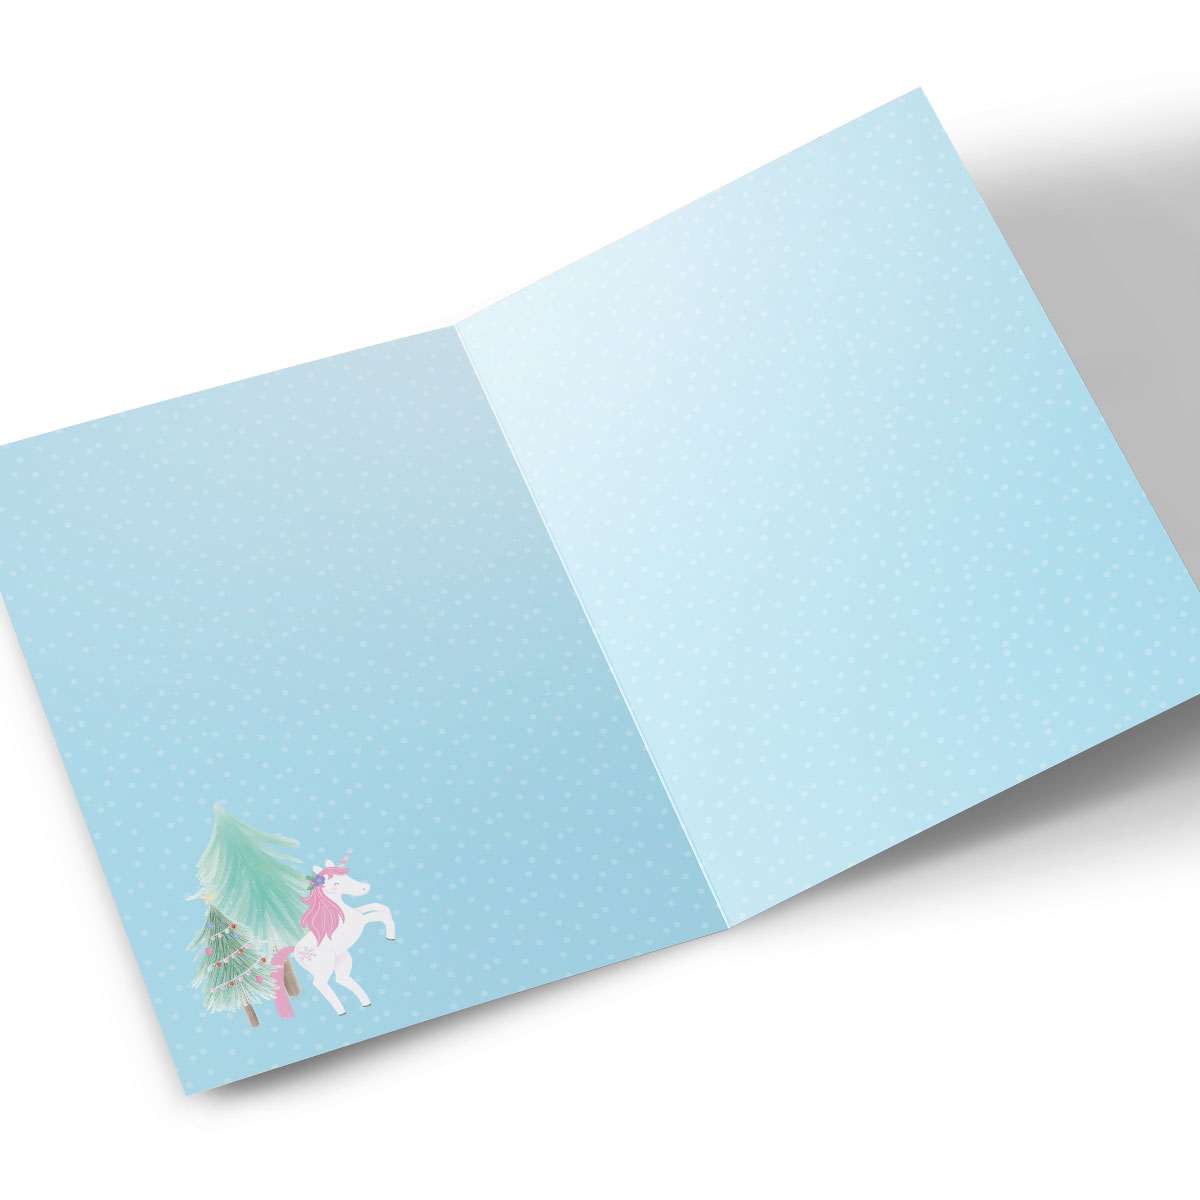 Personalised Photo Christmas Card - Unicorn Magic